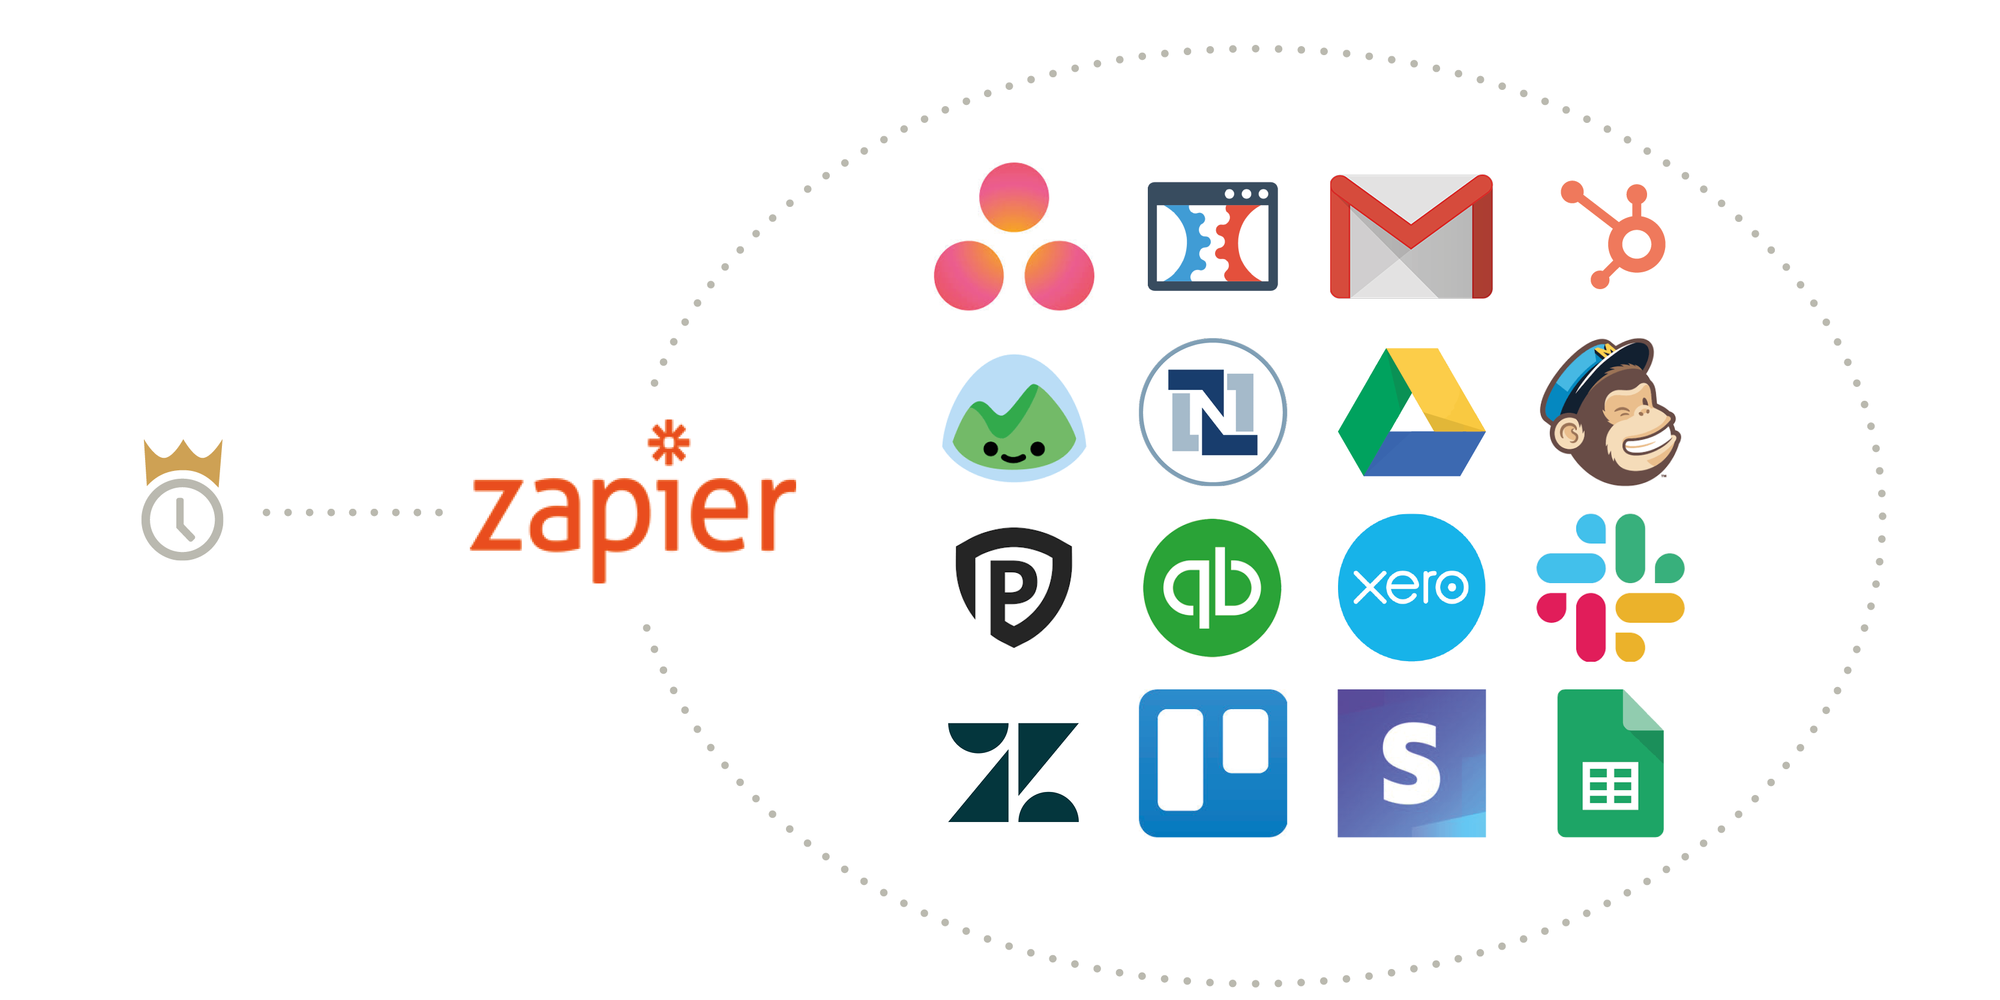 Zapier позволяет приложениям взаимодействовать друг с другом